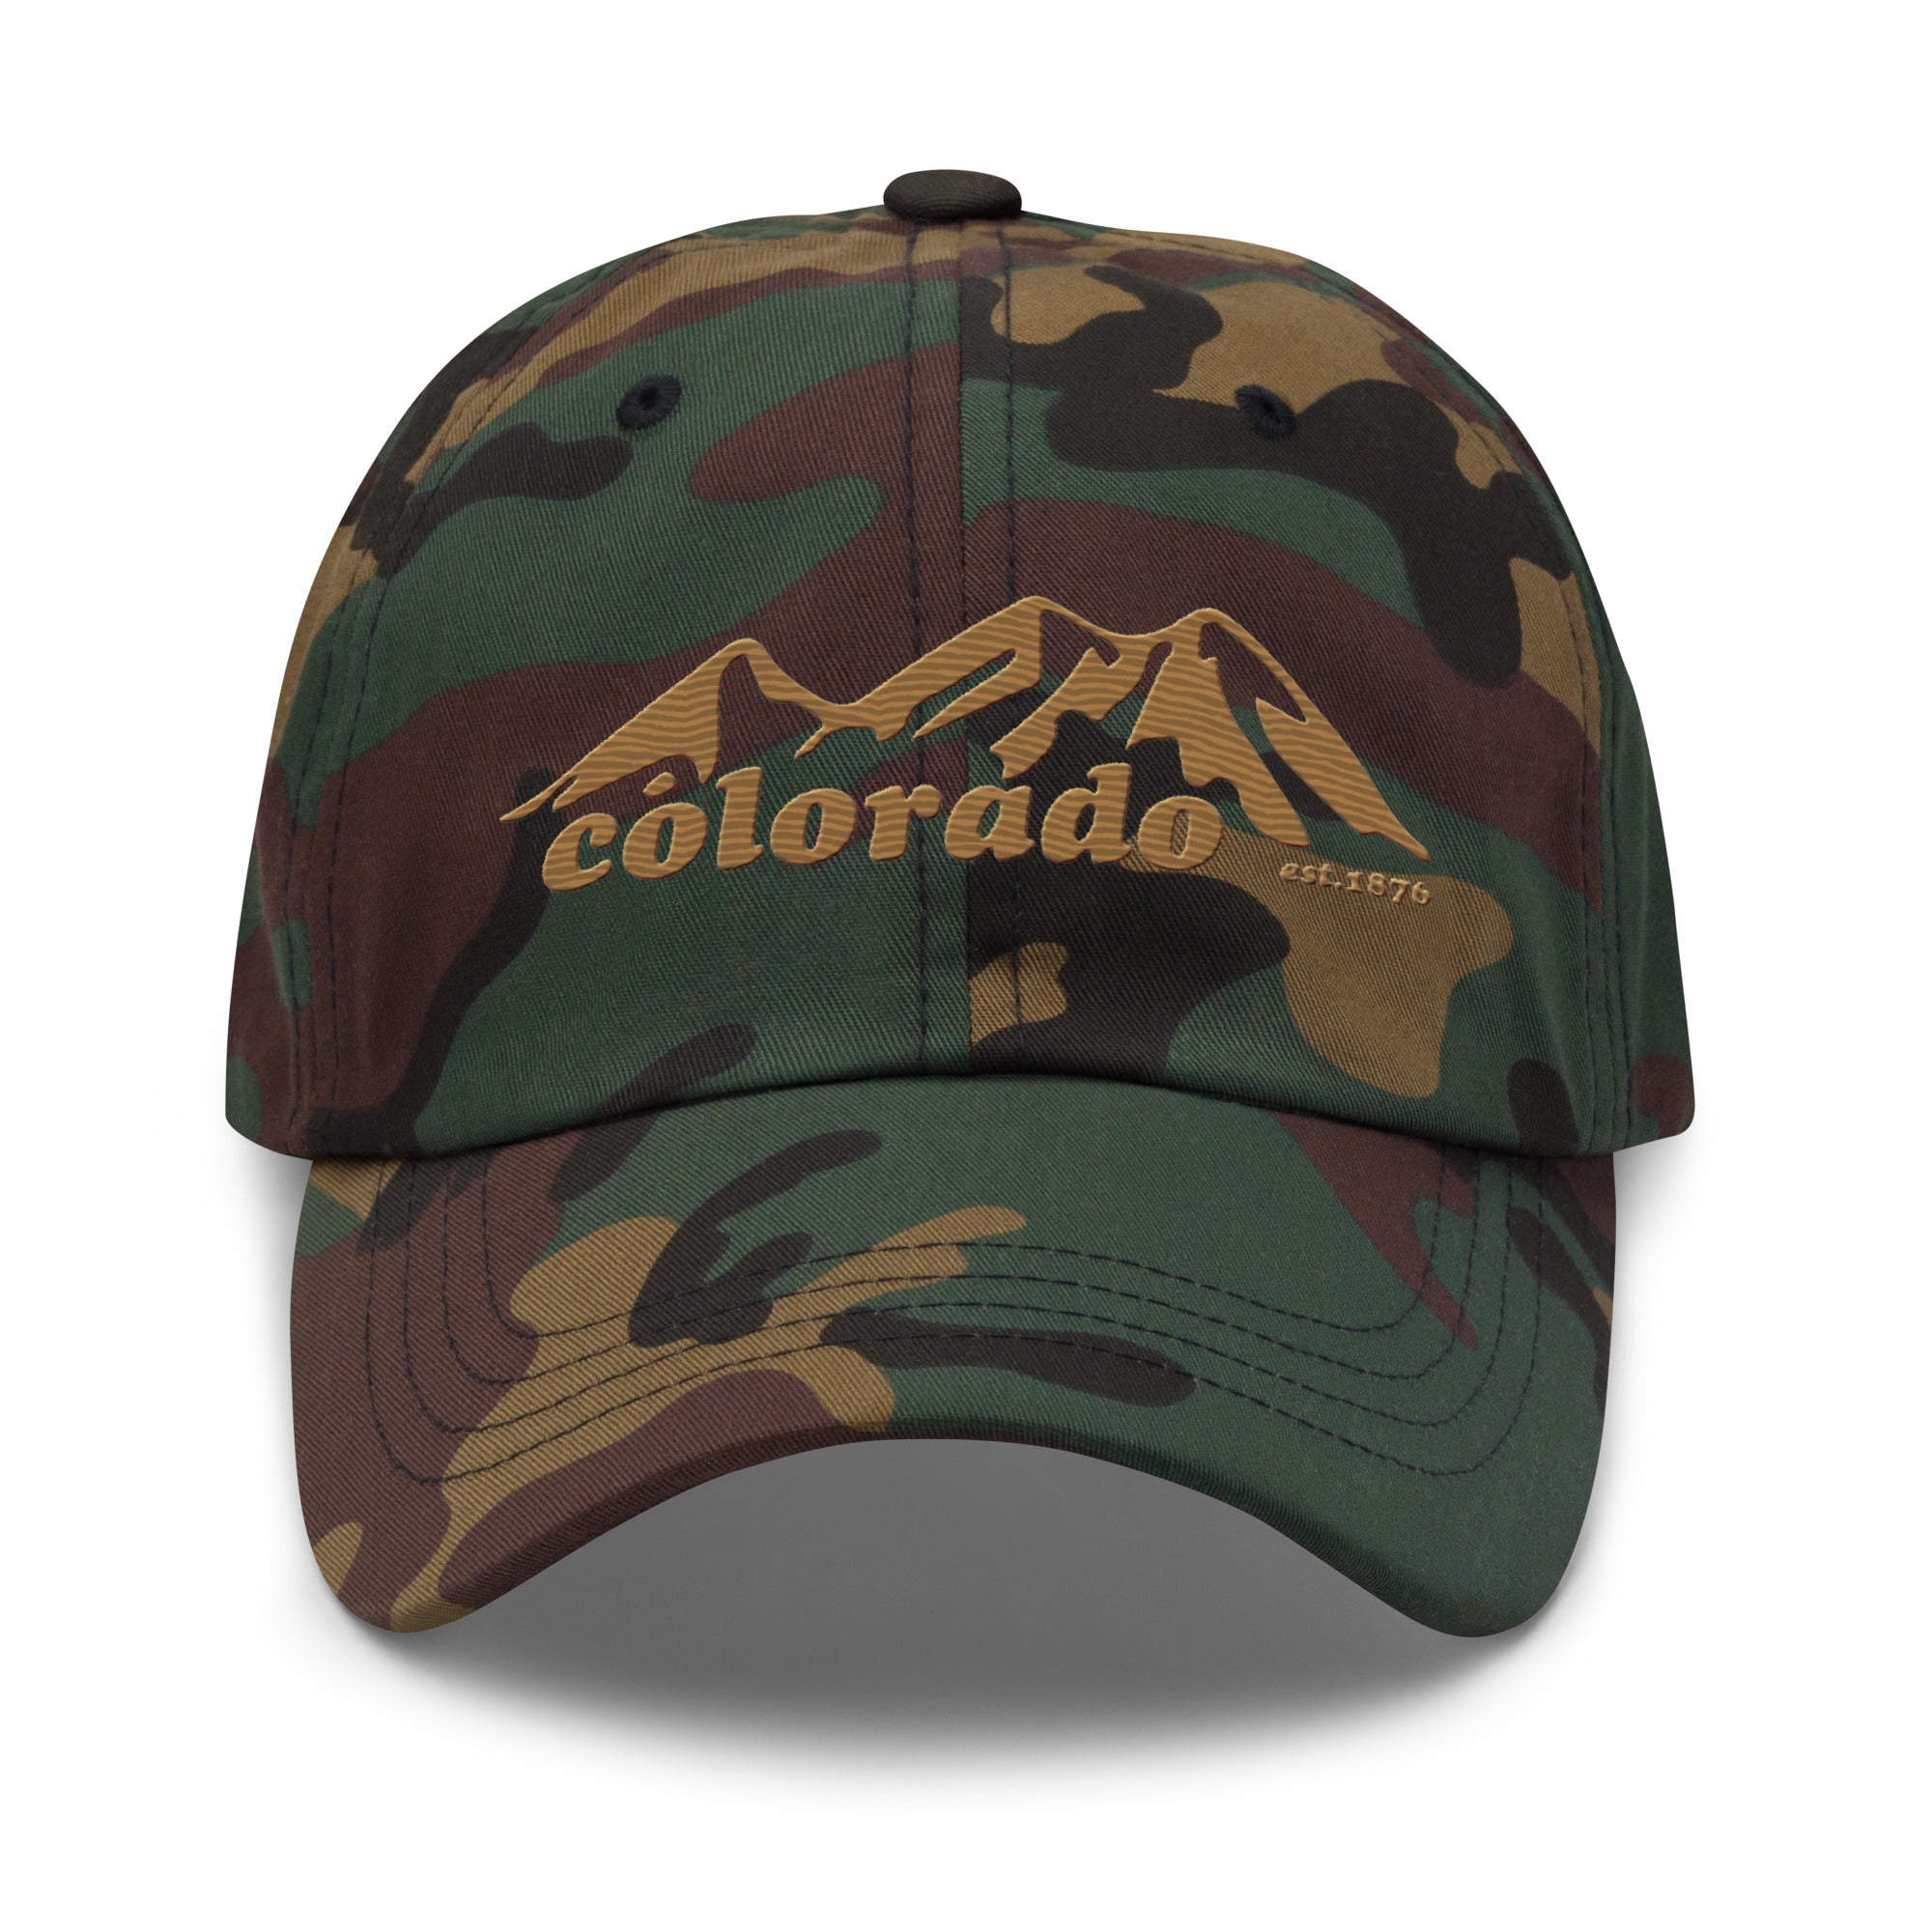 Colorado Mountains Dad hat